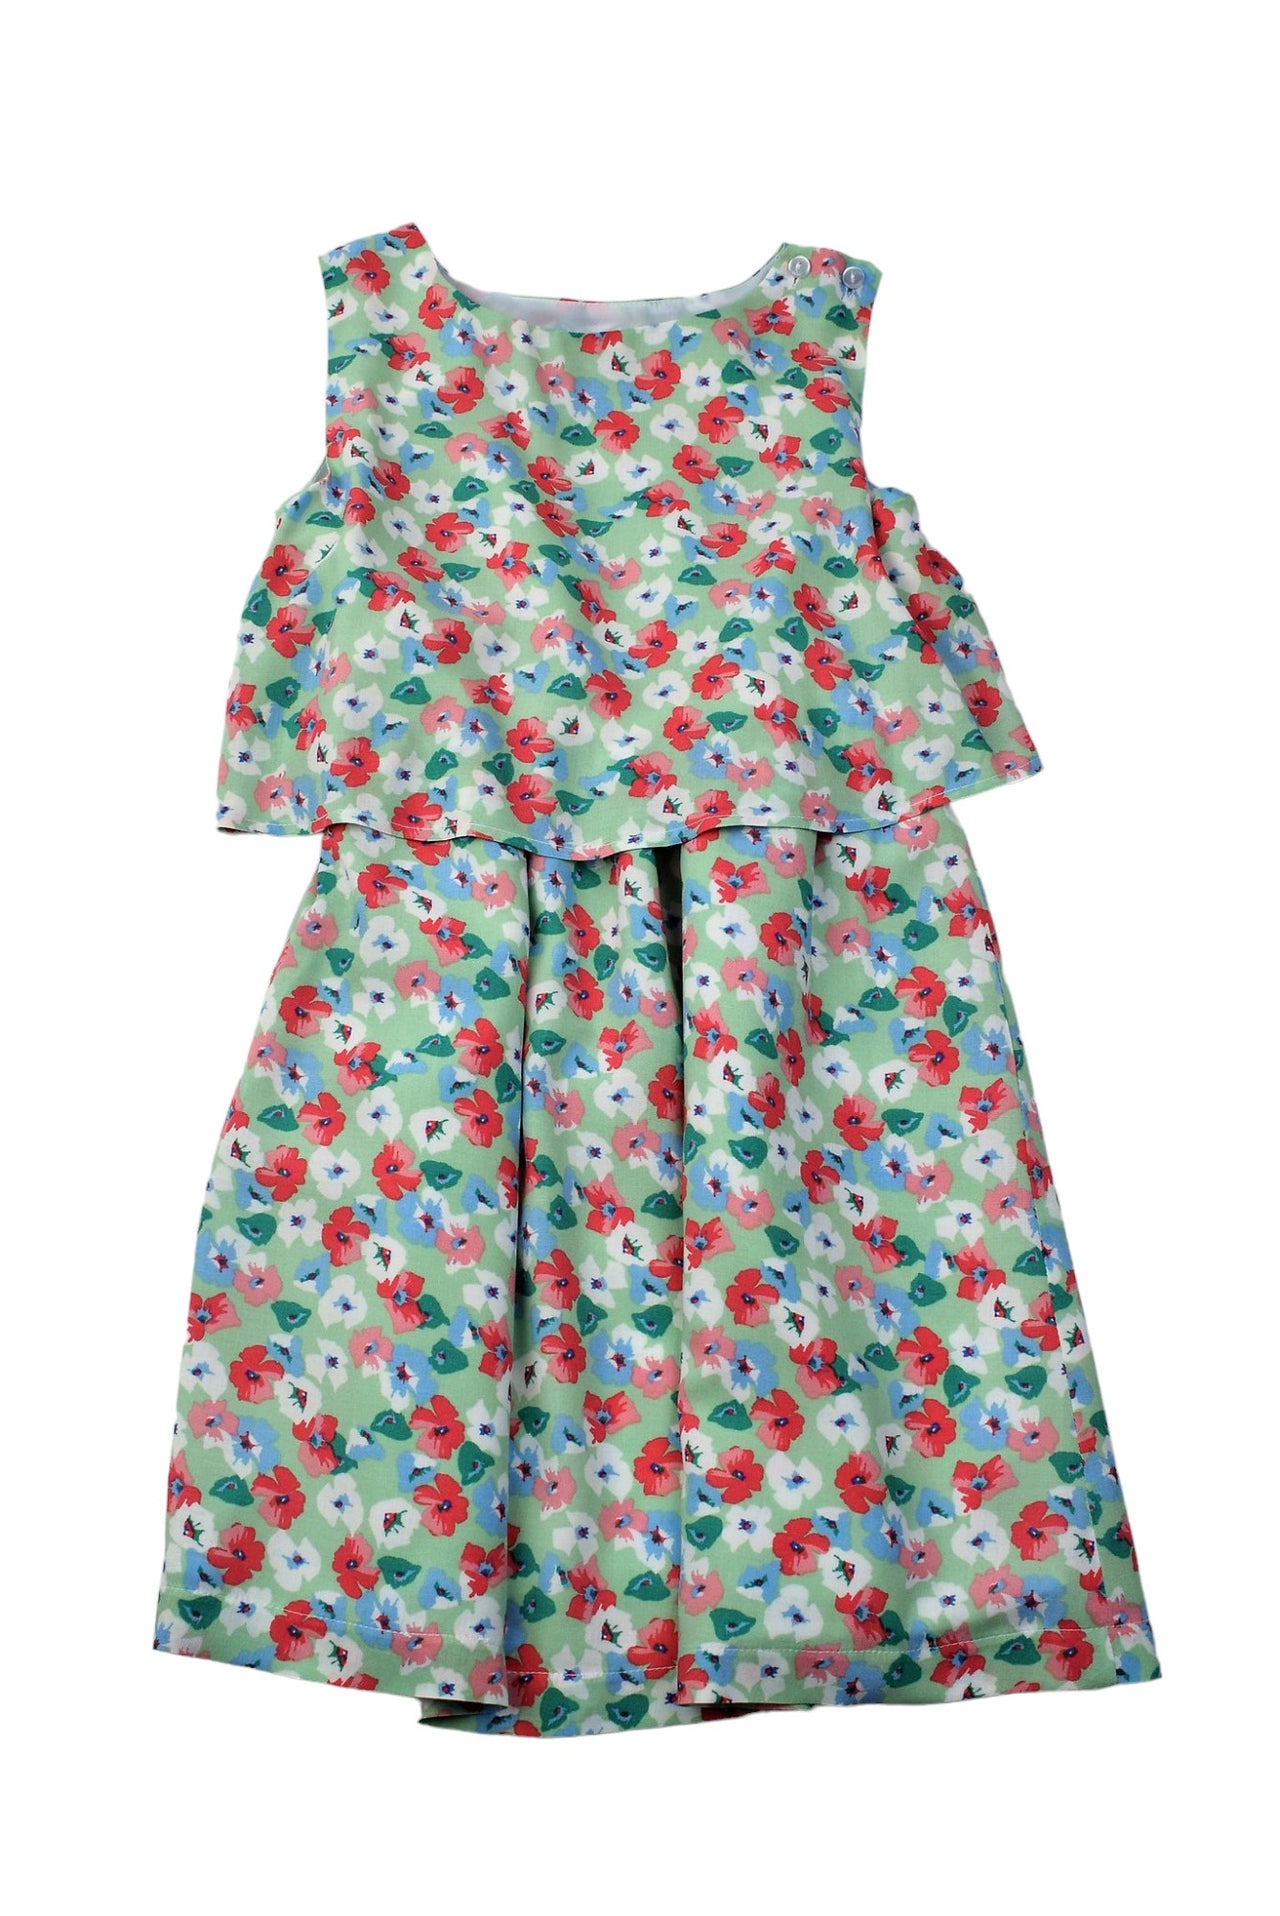 Maggie Breen Elastic Waist Dress Pink/Green Floral 71062 5012